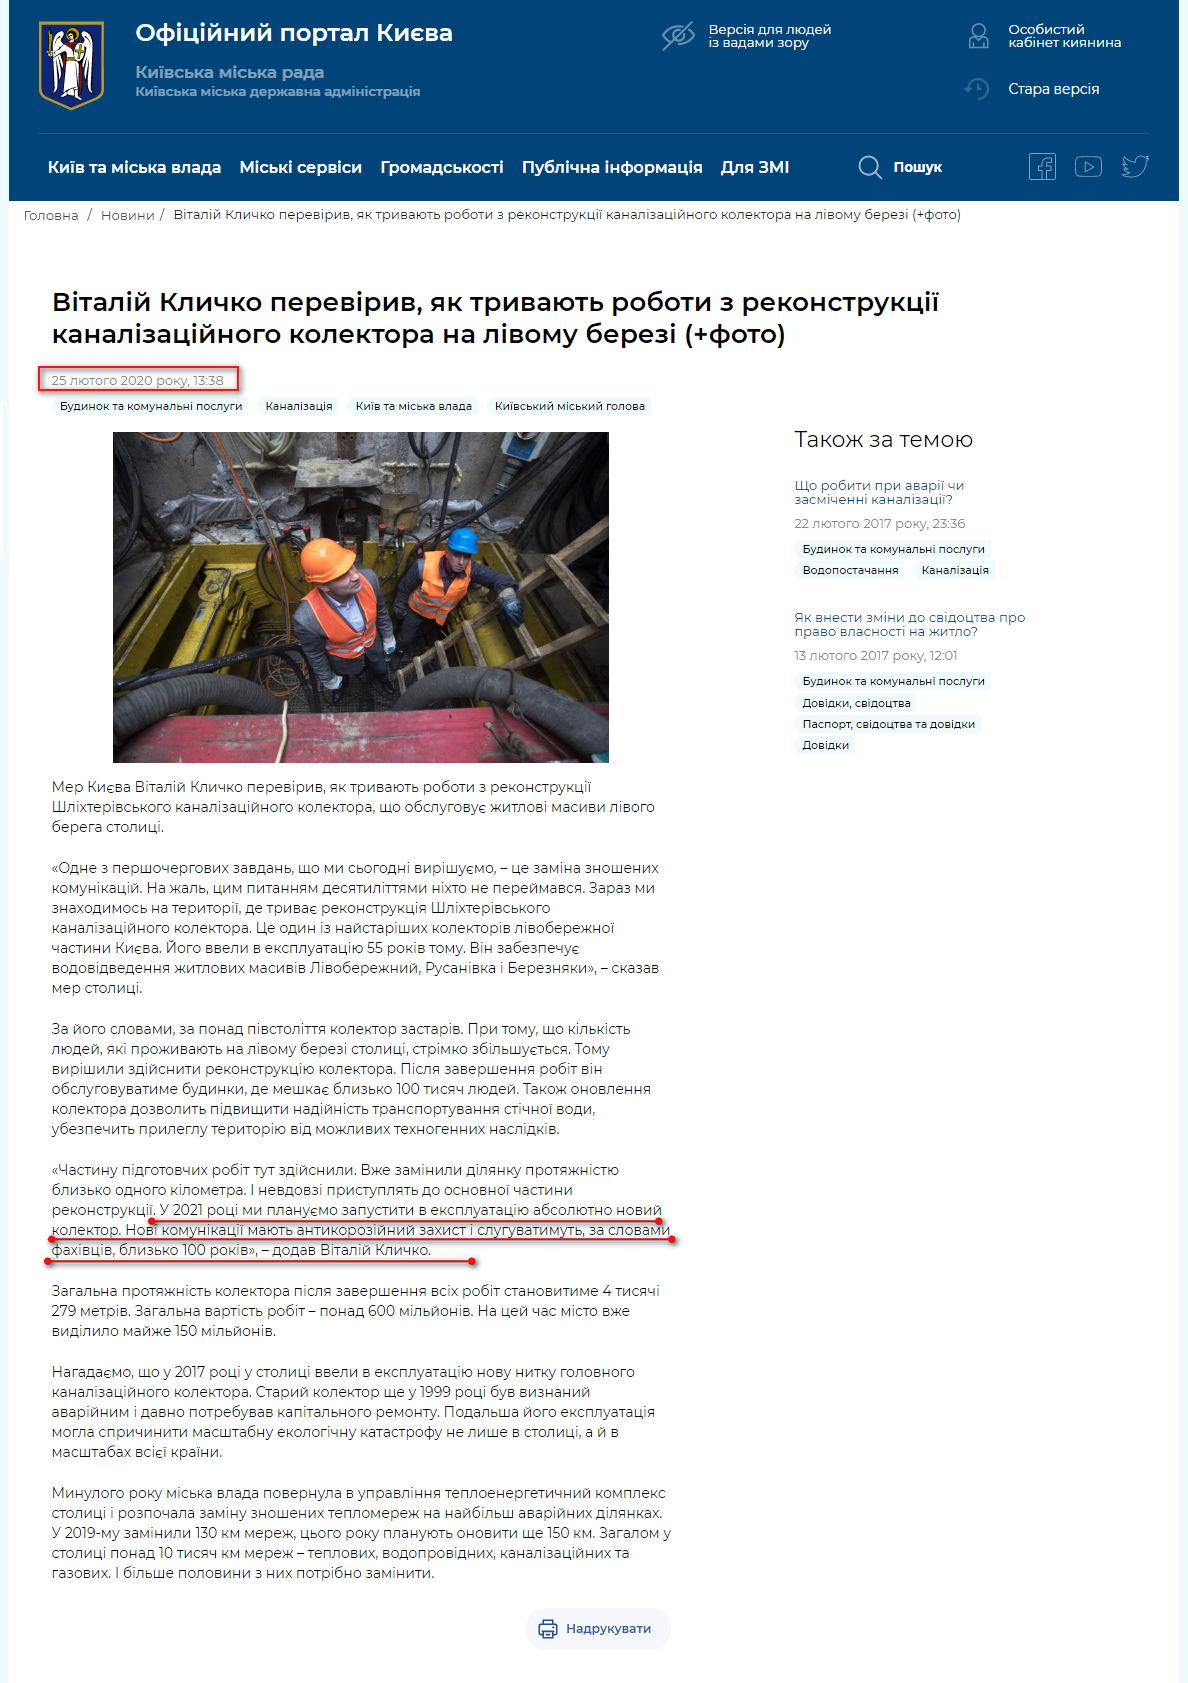 https://kyivcity.gov.ua/news/vitaliy_klichko_pereviriv_yak_trivayut_roboti_z_rekonstruktsi_kanalizatsiynogo_kolektora_na_livomu_berezi/